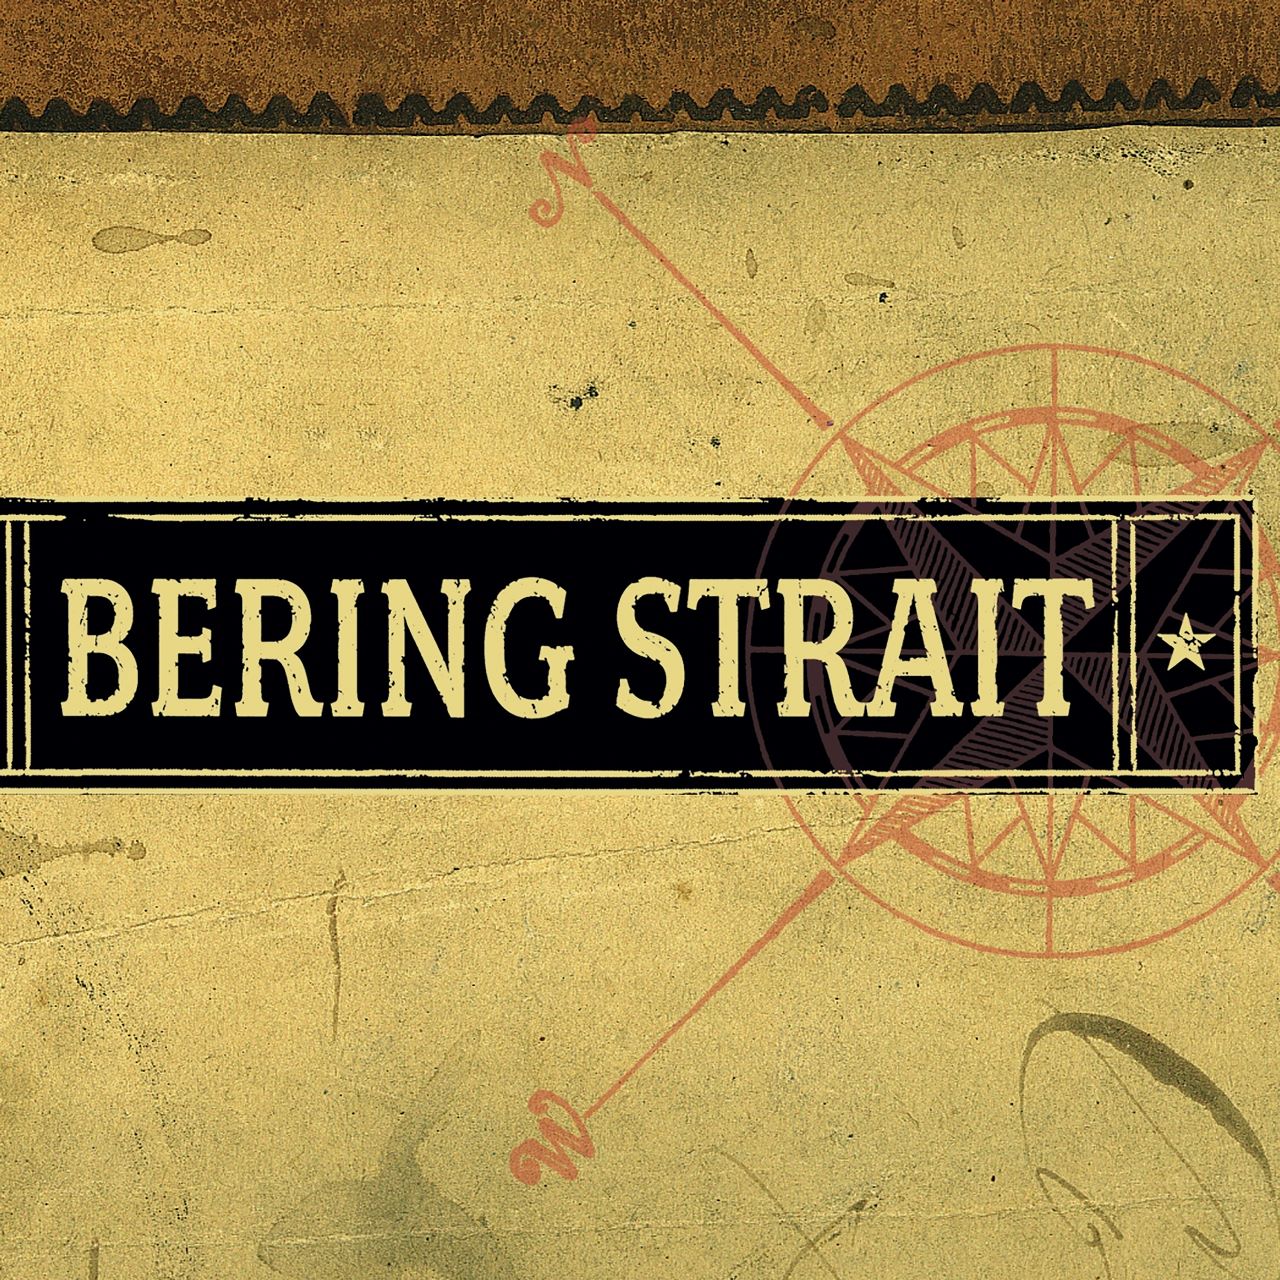 Bering Strait - Bering Strait cover album